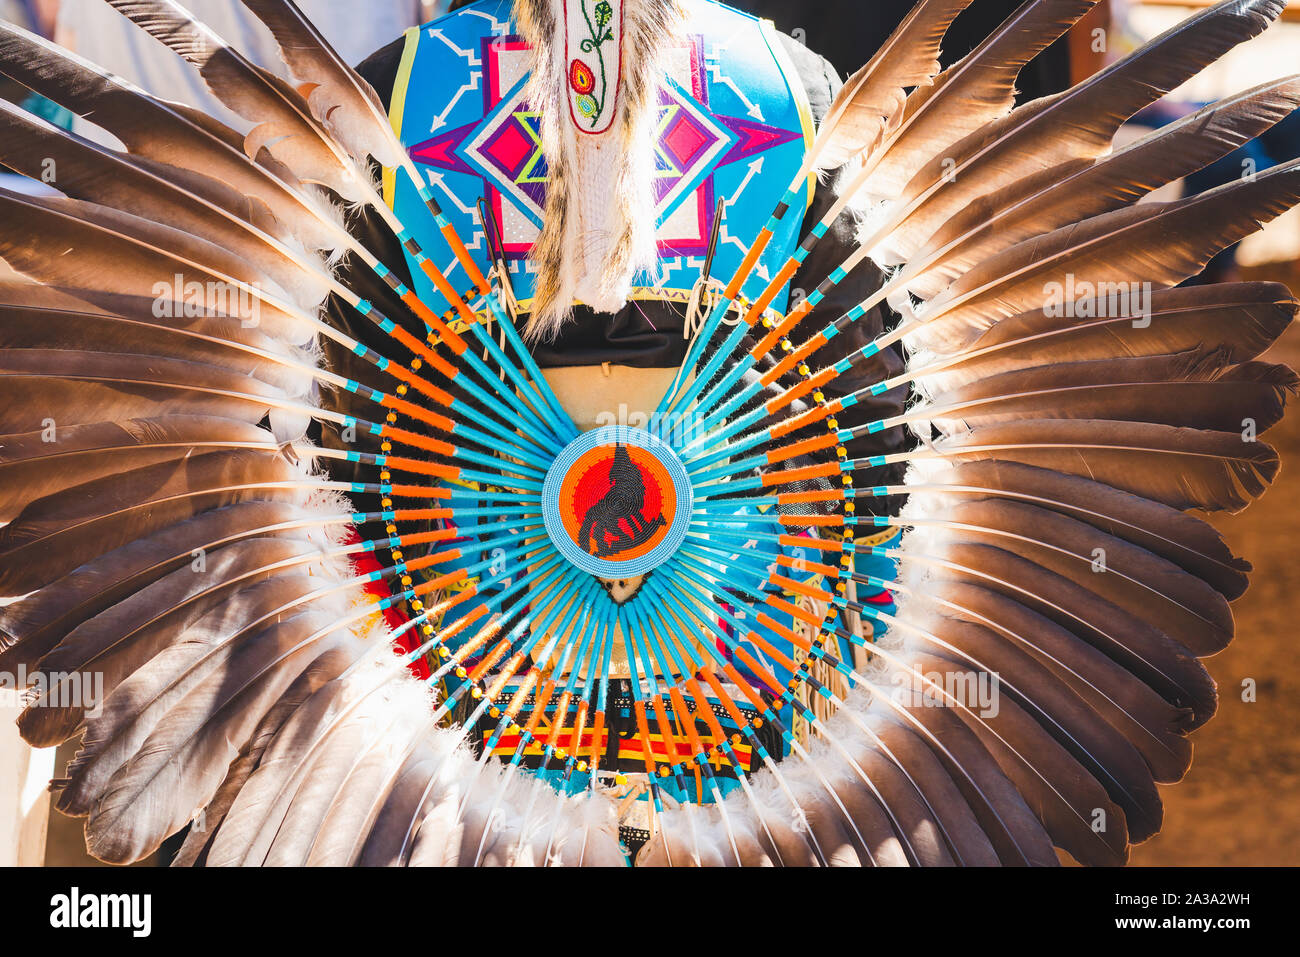 2019 Santa Ynez Chumash Inter-Tribal Pow-wow. Le bouclier de guerre a été utilisé pour repousser les flèches et les clubs Banque D'Images